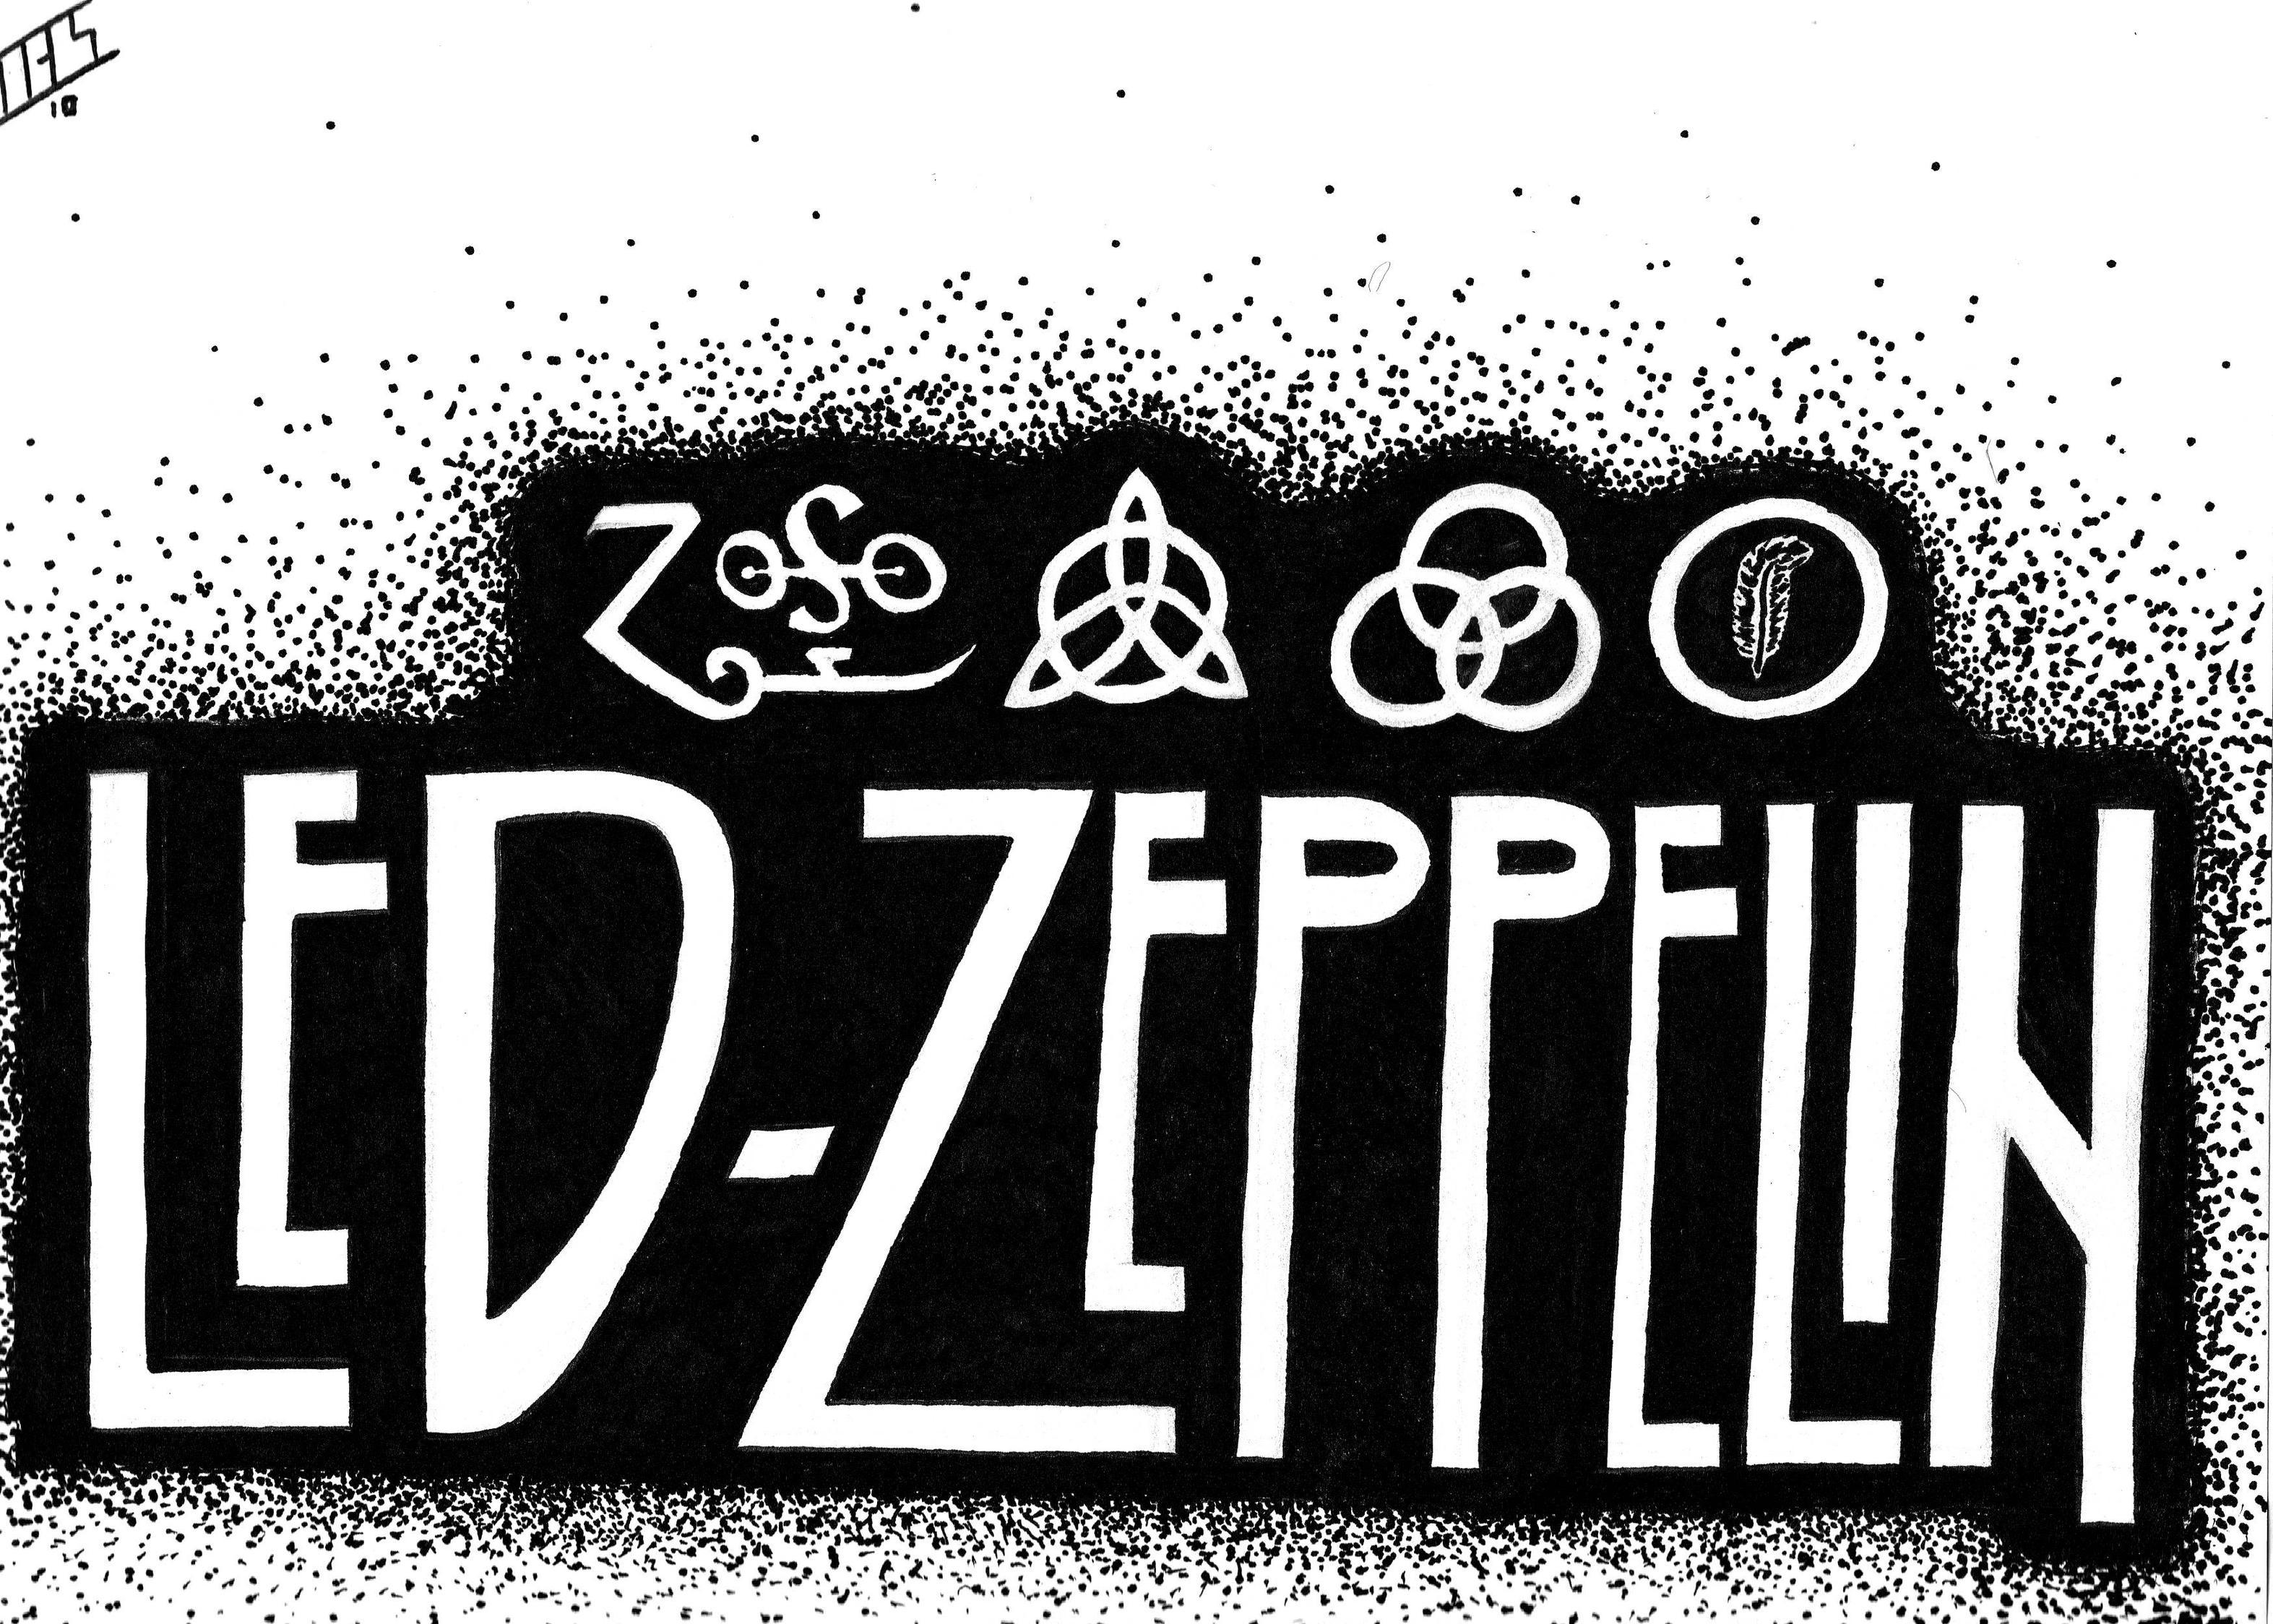 Led Zeppelin Computer Wallpapers, Desktop Backgrounds 3496x2498 Id